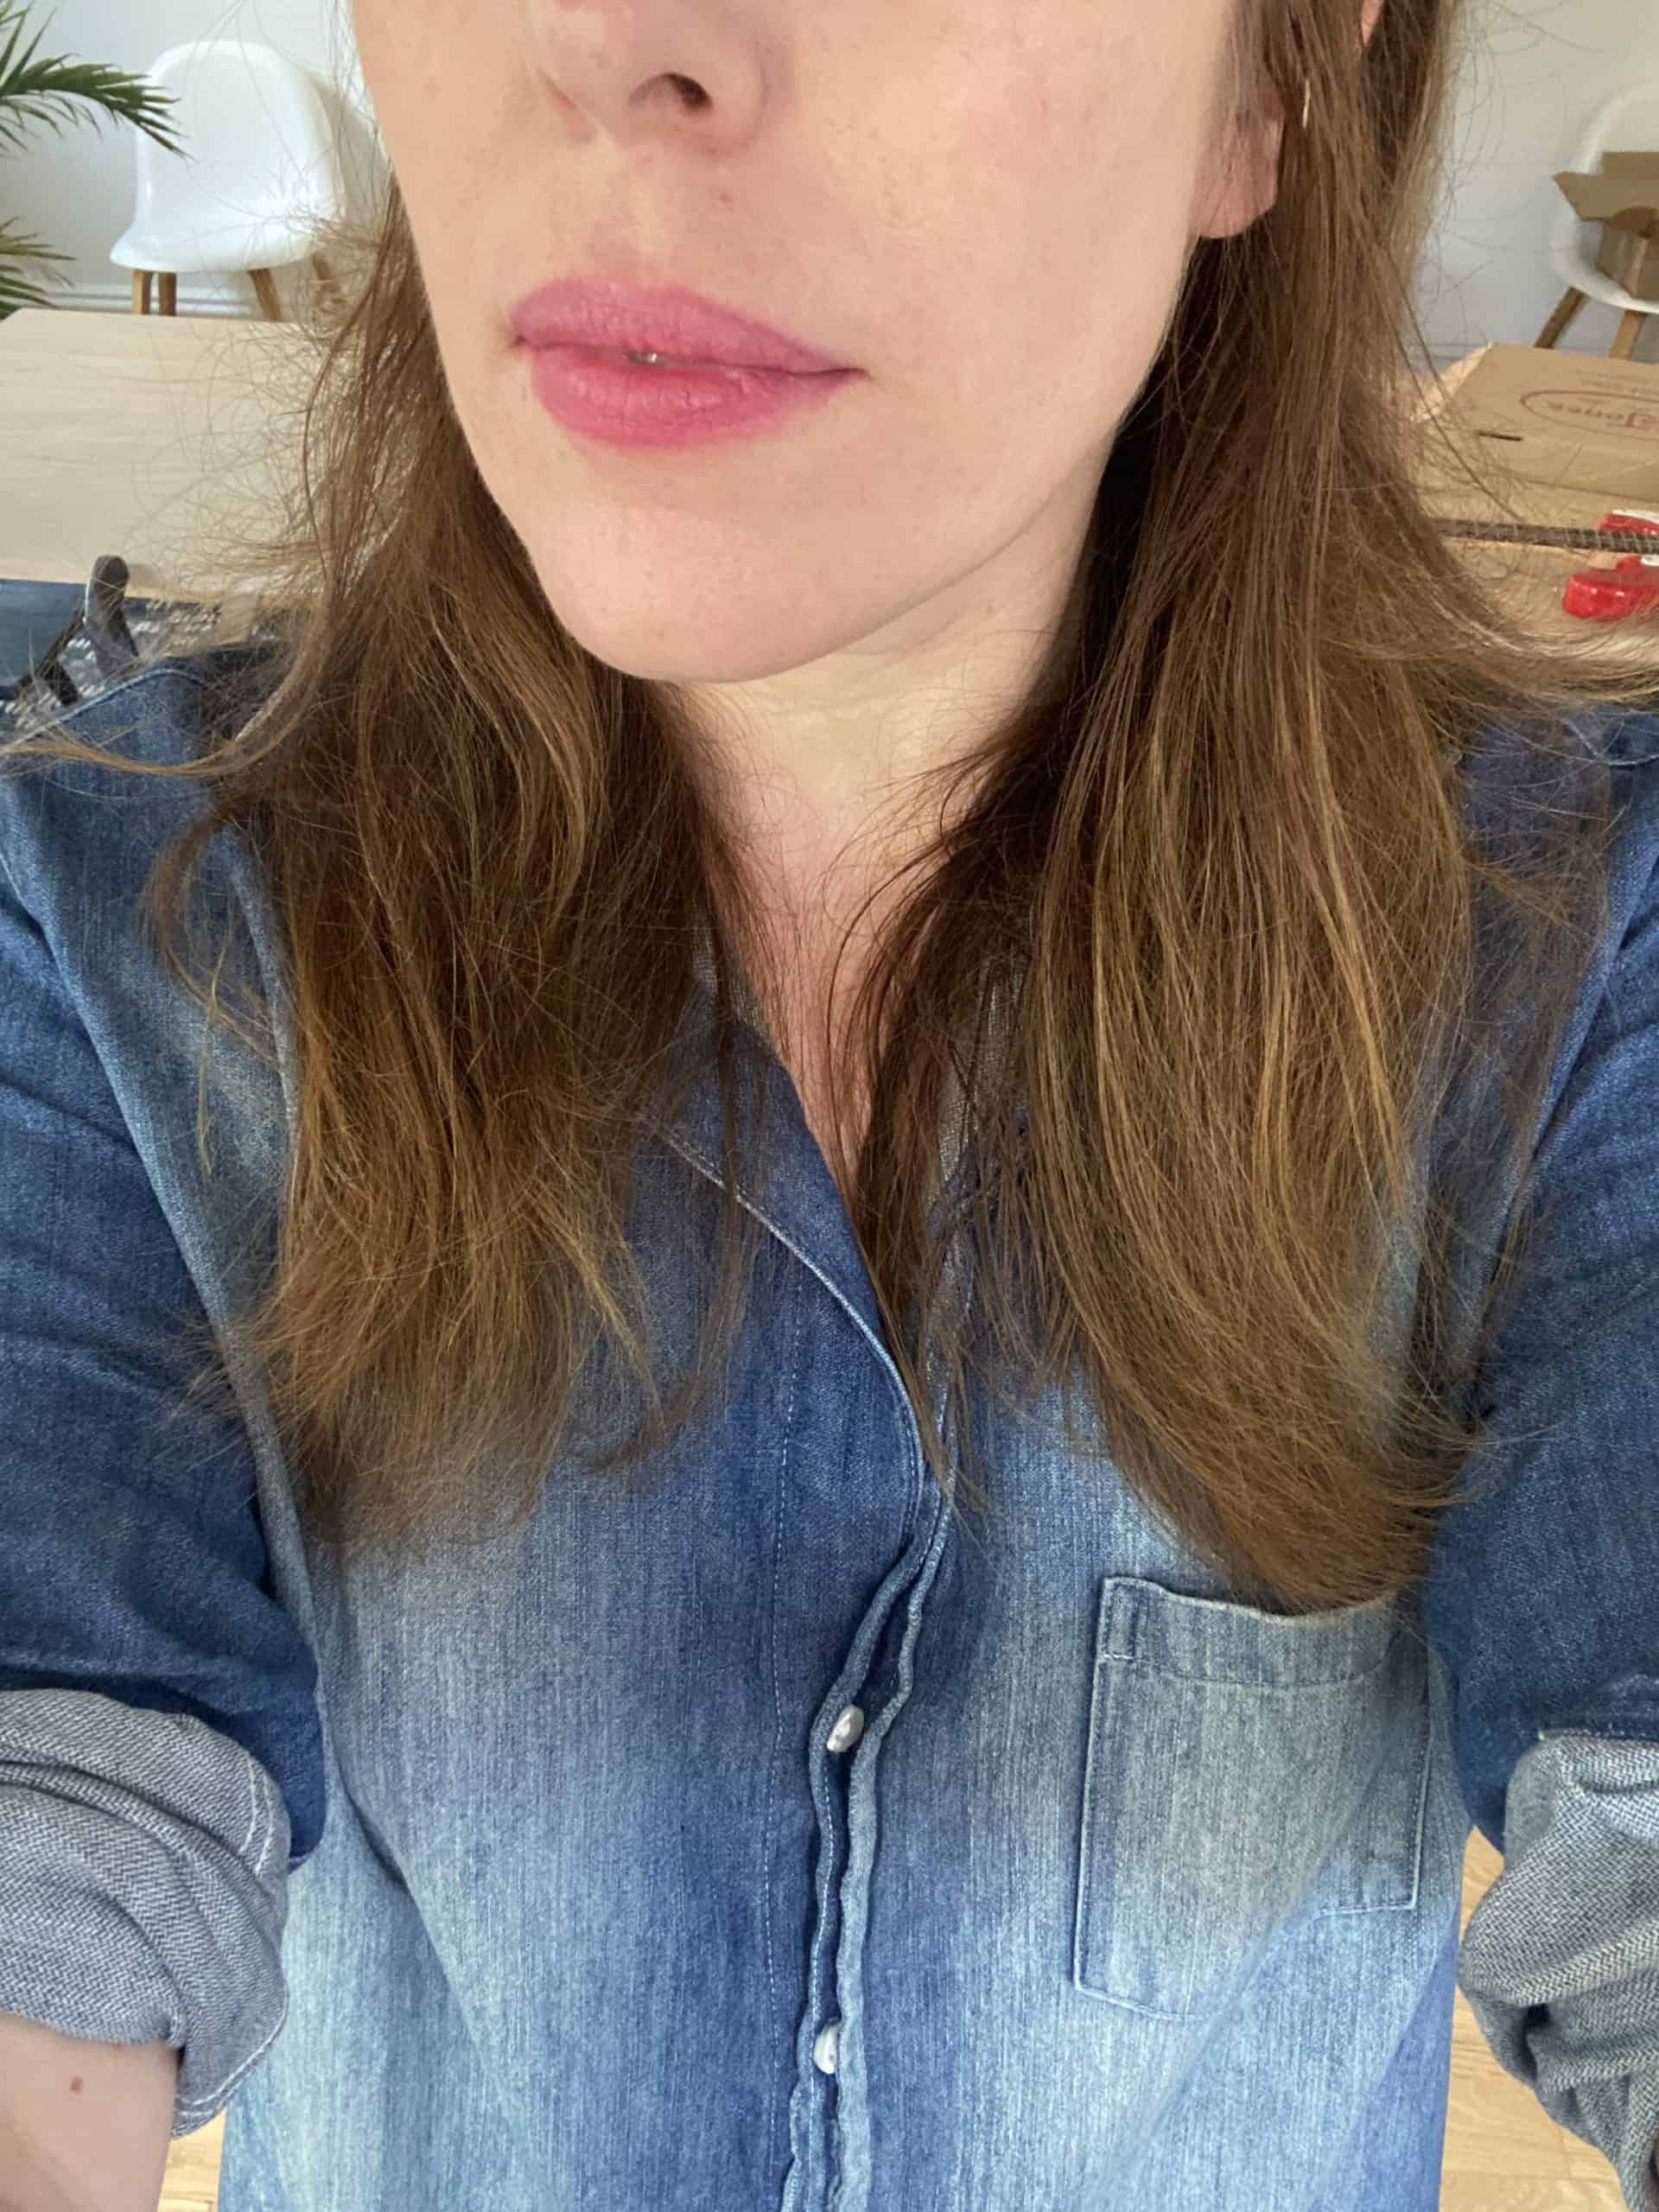 bitten lipstick